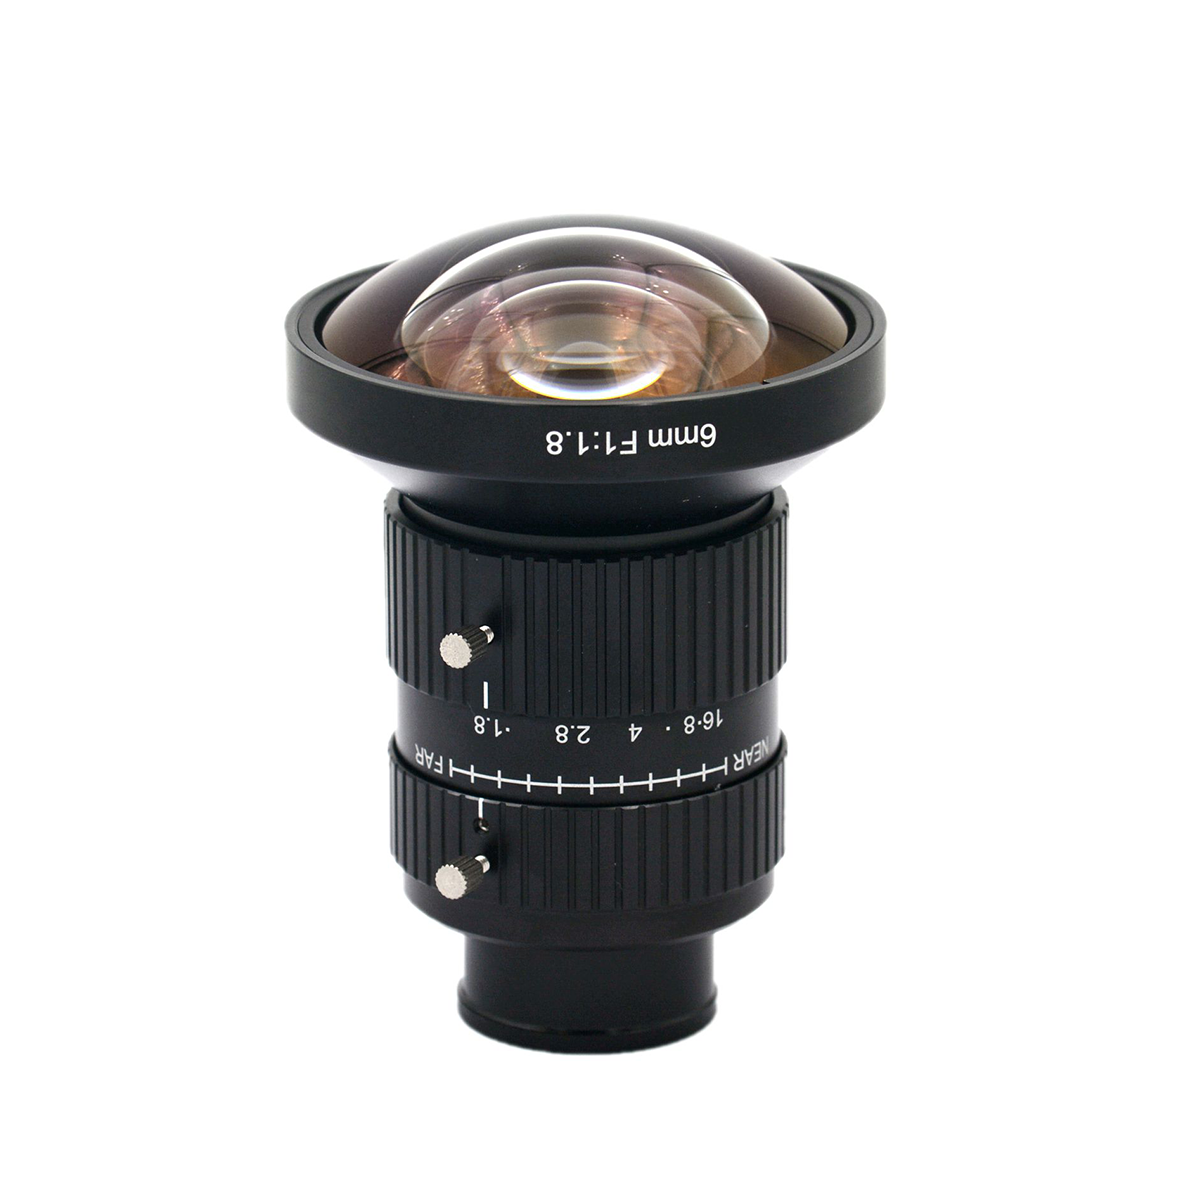 6mm焦距 20MP 工业相机镜头 手动光圈 定焦镜头 CS接口 1.1